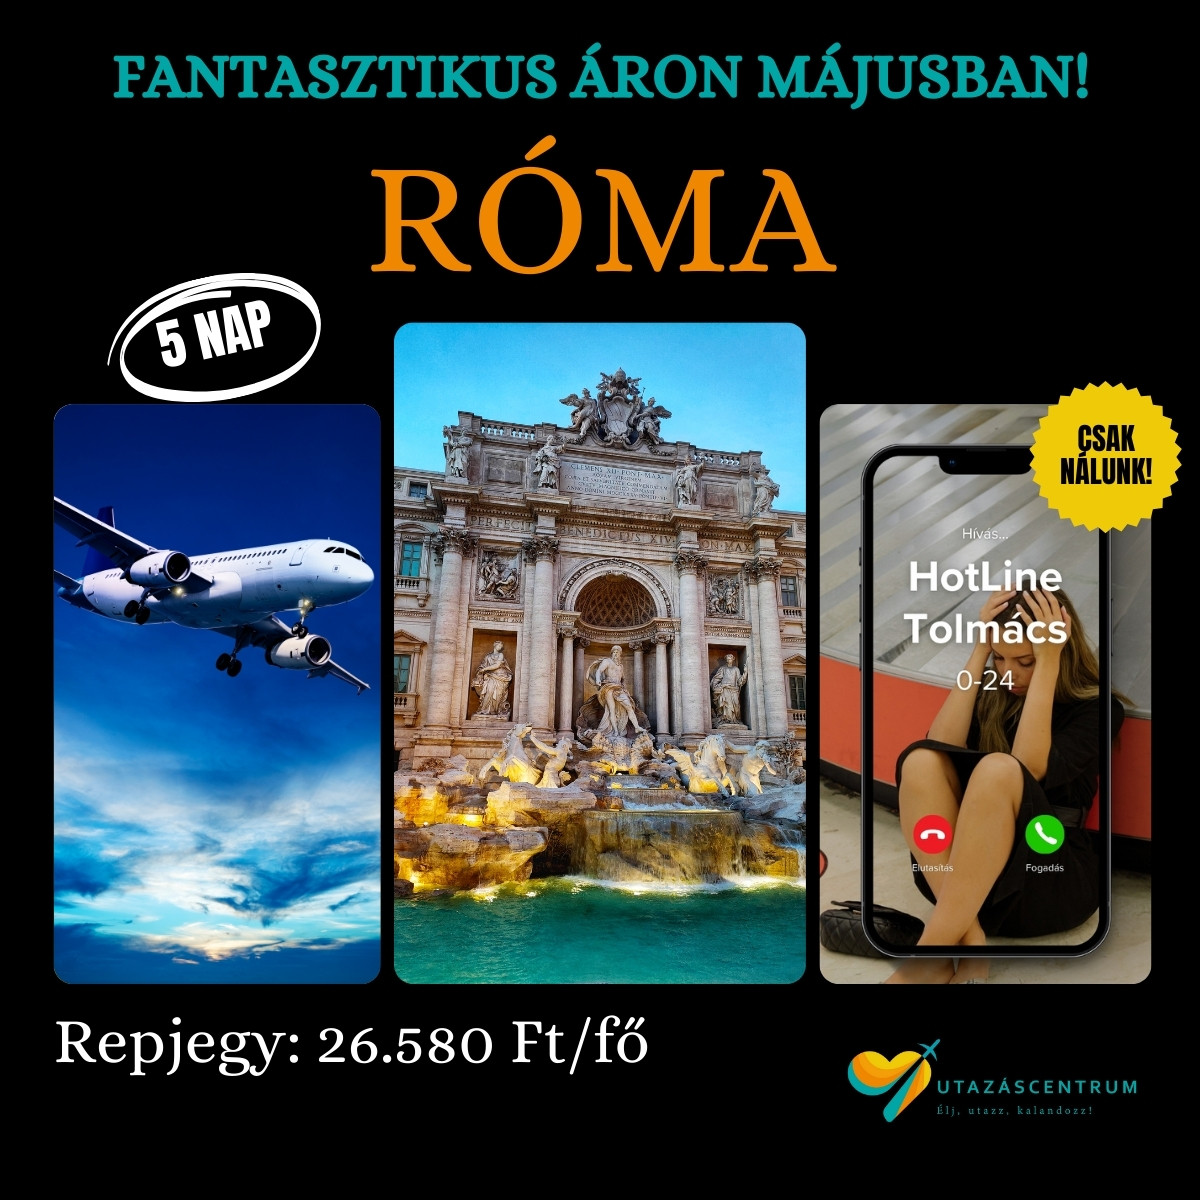 Róma Olaszország repülőjegy utazás városlátogatás szállás utazáscentrum blog nyaralás üdülés